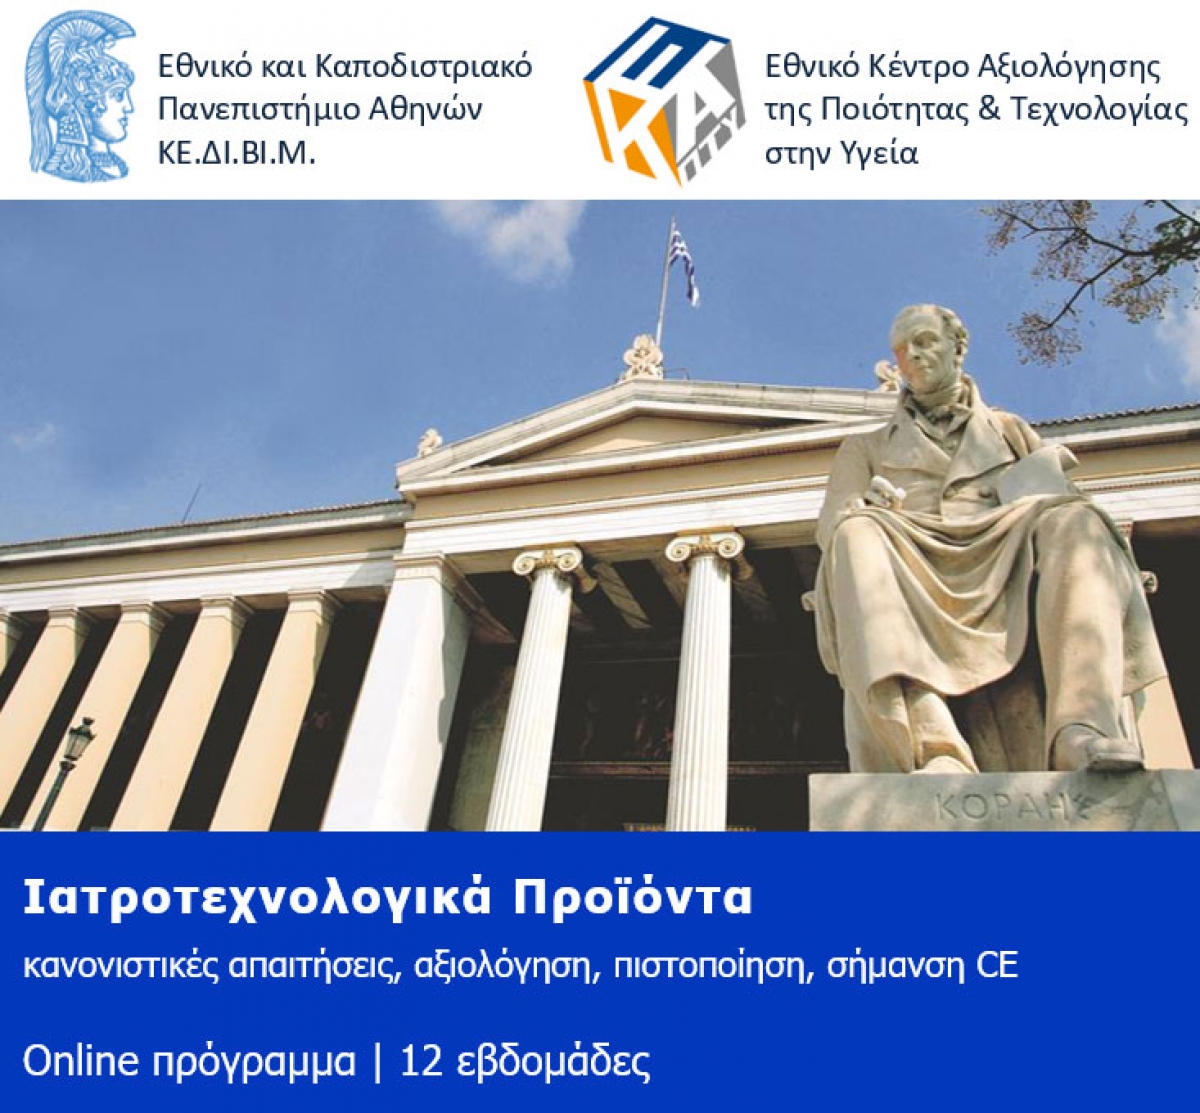 Νέο πρόγραμμα εξειδίκευσης (online) του Εθνικού και Καποδιστριακού Πανεπιστημίου Αθηνών και του Εθνικού Κέντρου Αξιολόγησης της Ποιότητας &amp; Τεχνολογίας στην Υγεία